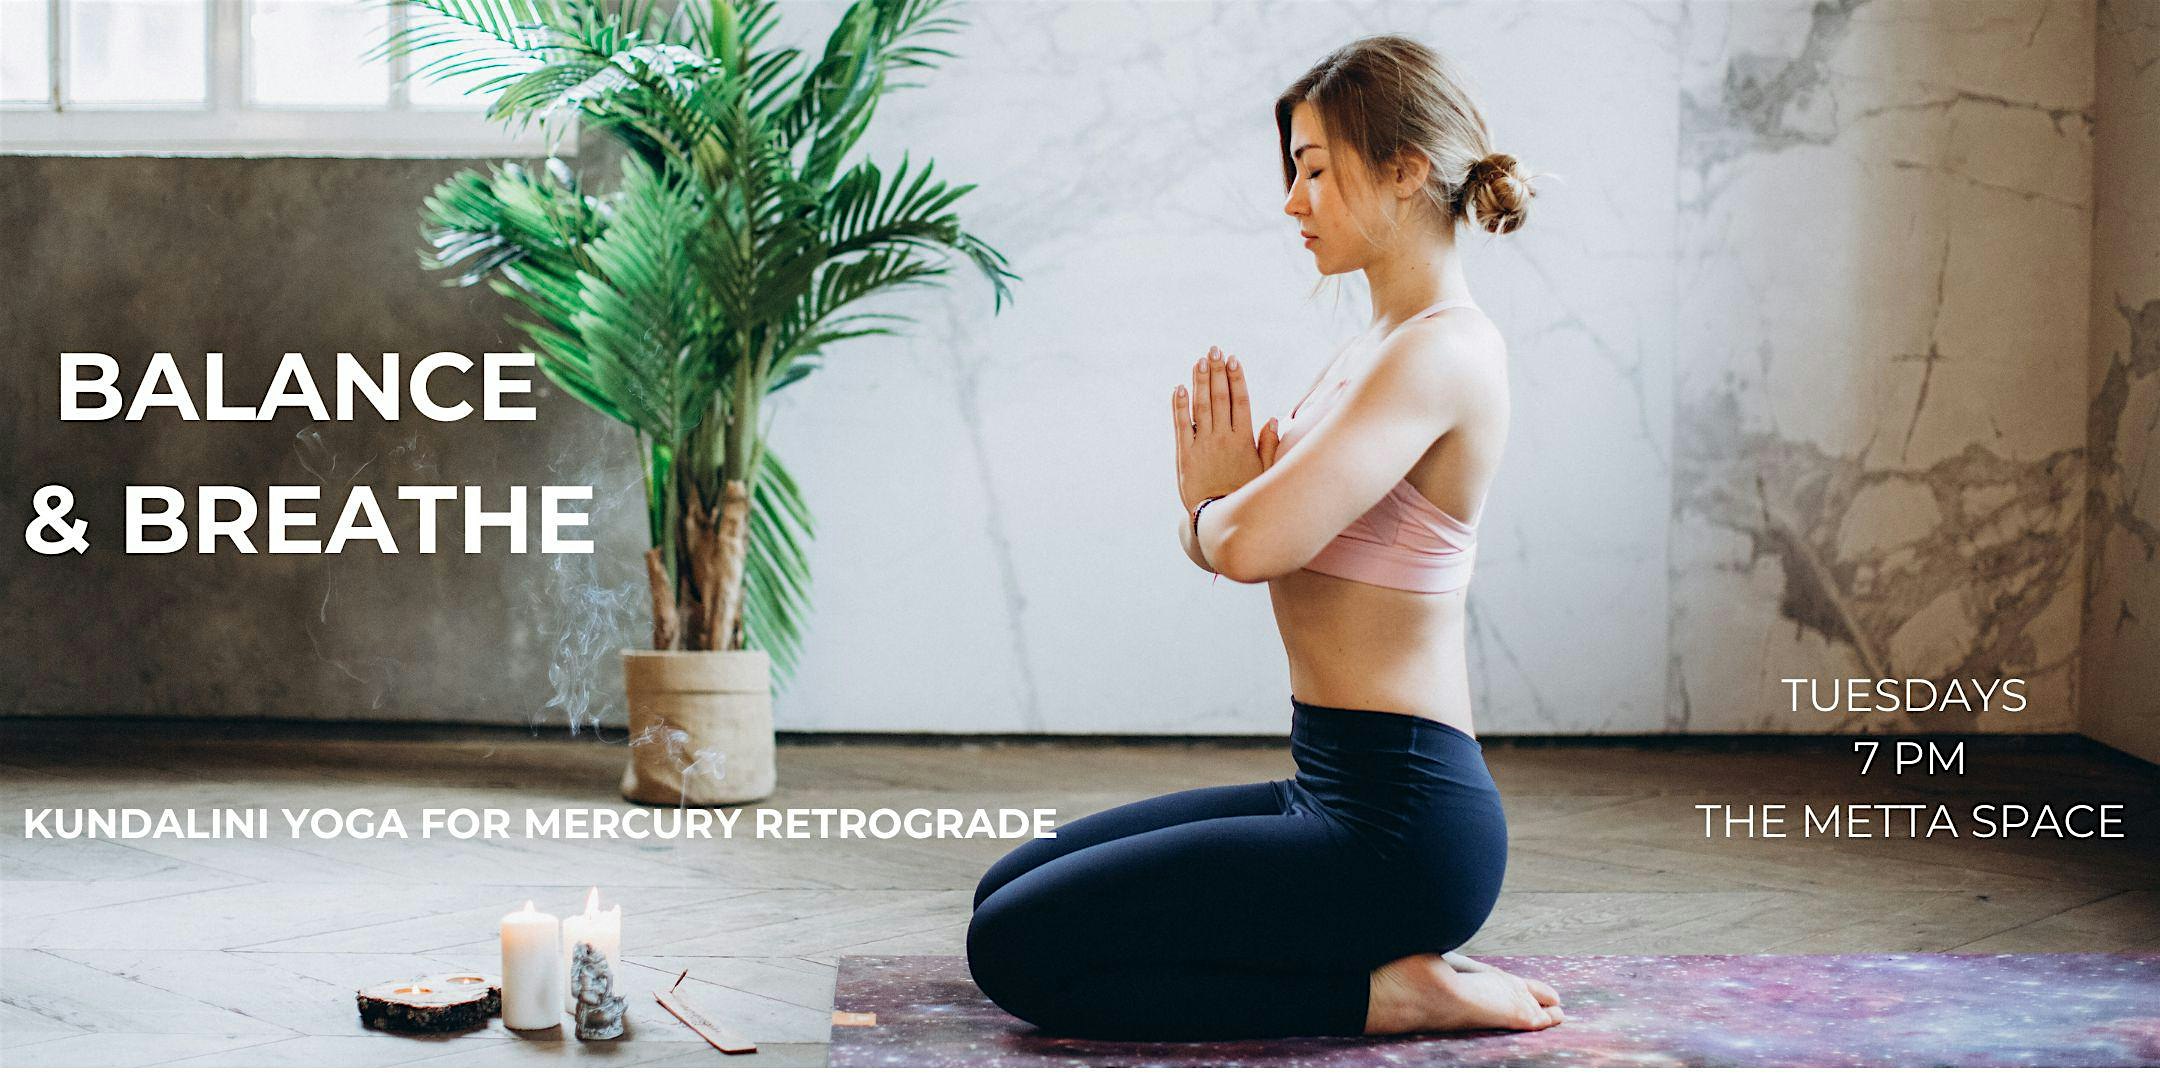 Balance & Breathe: Kundalini Yoga for Mercury Retrograde